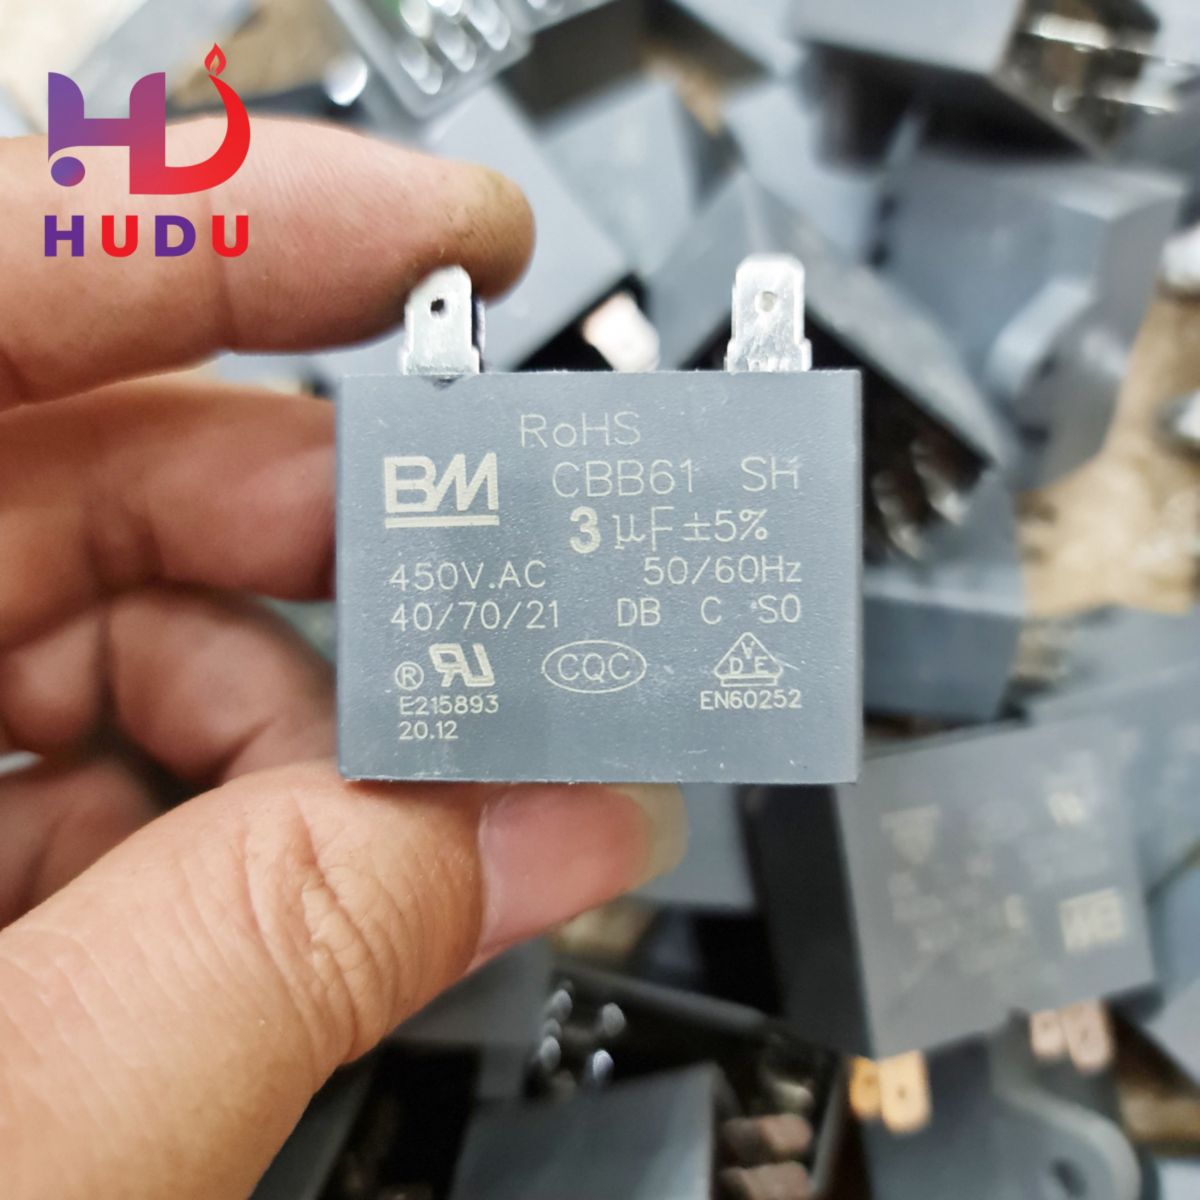 Linh kiện điện tử Hudu cung cấp tụ quạt BM rắc cắm 3µF-450V đảm bảo chất lượng tốt